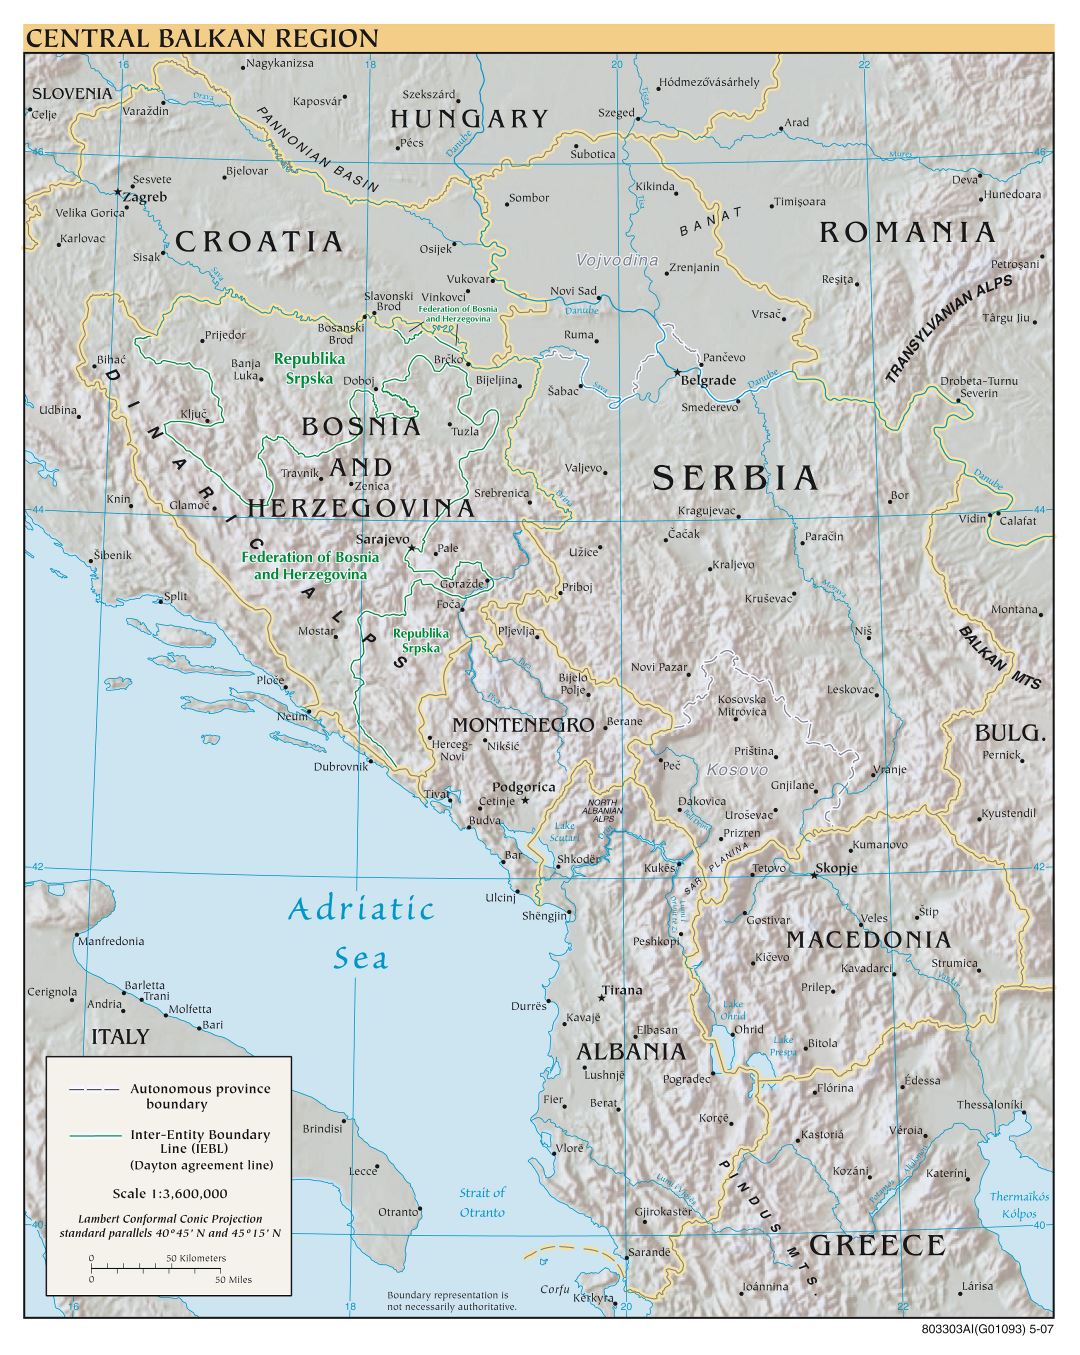 Mapa a gran escala política de la región central de los Balcanes con alivio y las principales ciudades - 2007